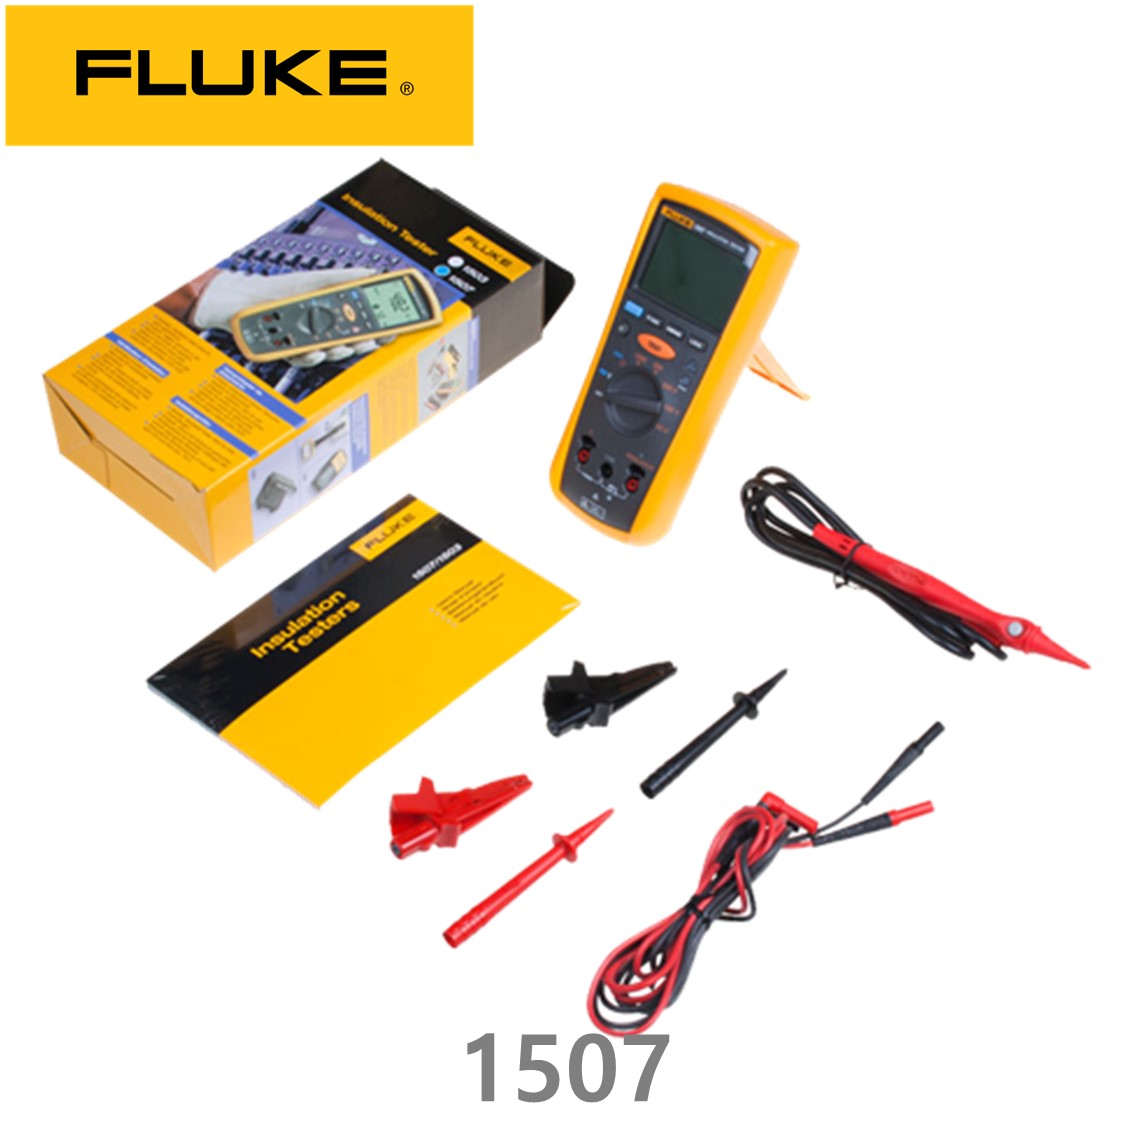 [ FLUKE 1507 ] 정품 플루크 절연저항계 1507, 절연시험기, 절연저항테스터